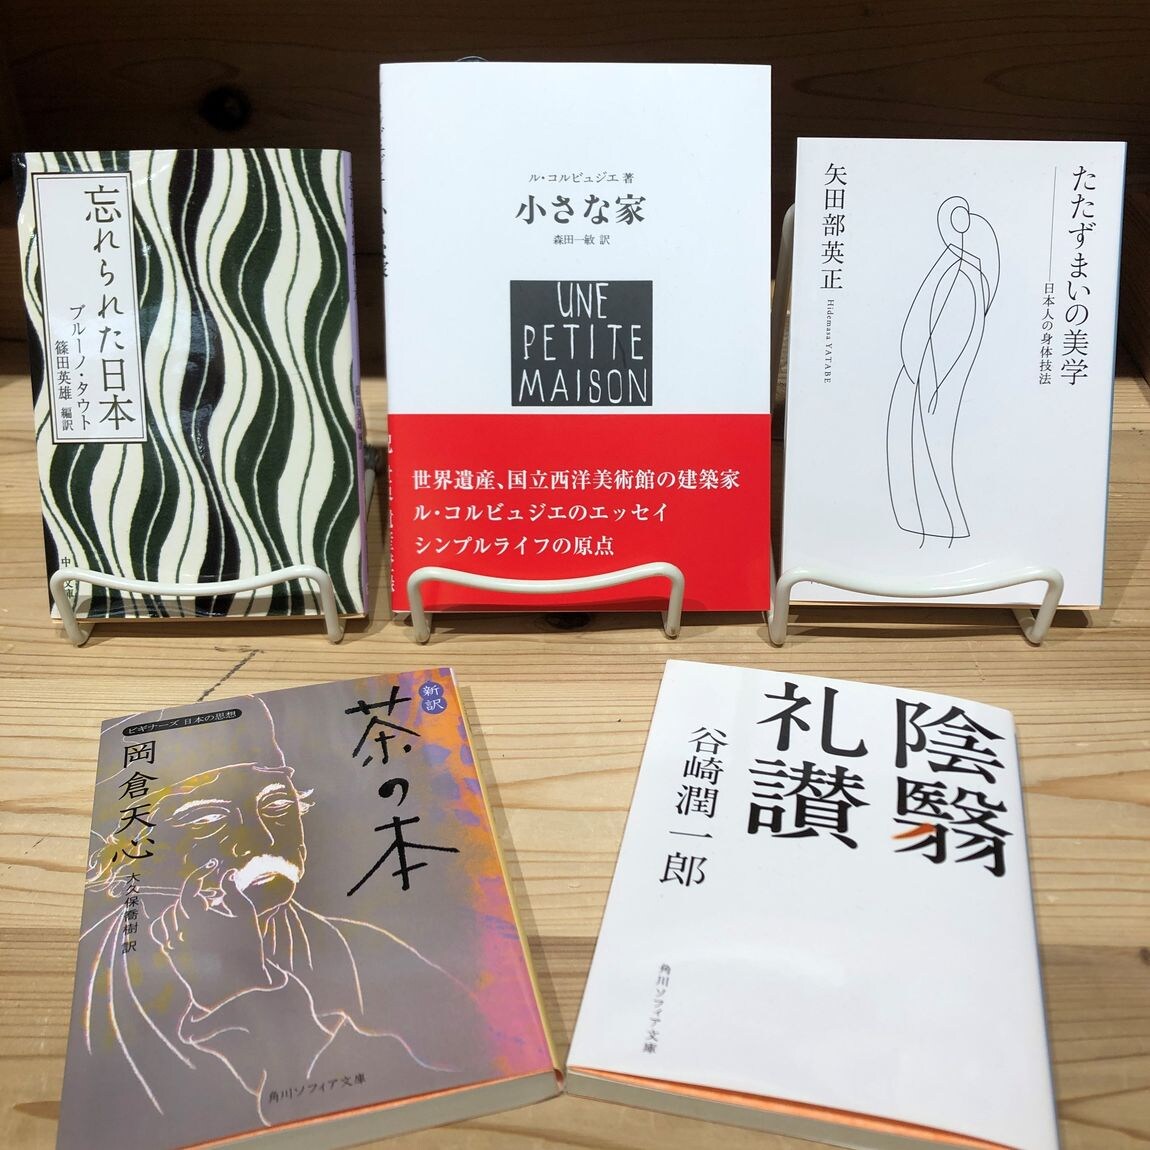 【アトレ恵比寿】 MUJI BOOKS 10月の特集コーナーは「腹八分目」